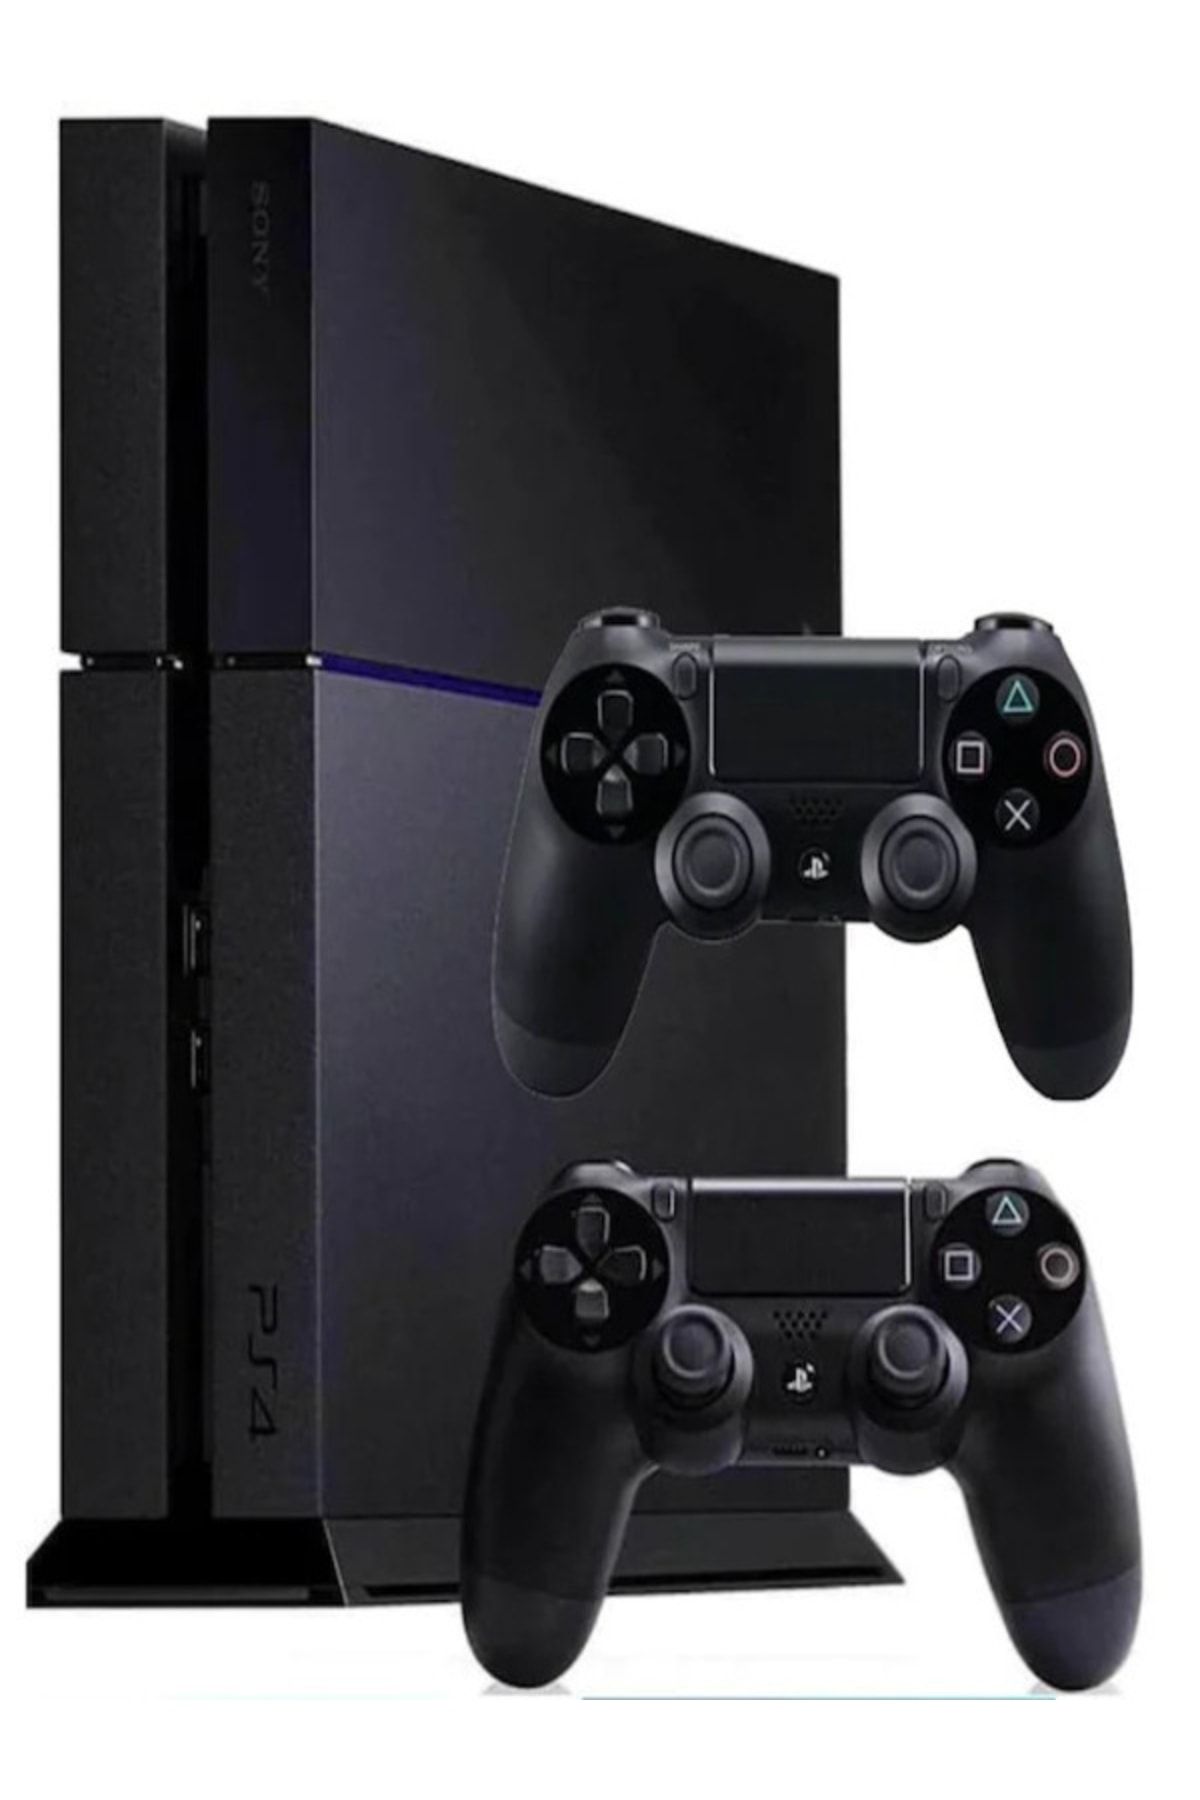 Sony Playstation 4 Parlak Kasa 500gb 2 Joystick 6 Ay Garanti Yenilenmiş Üründür.